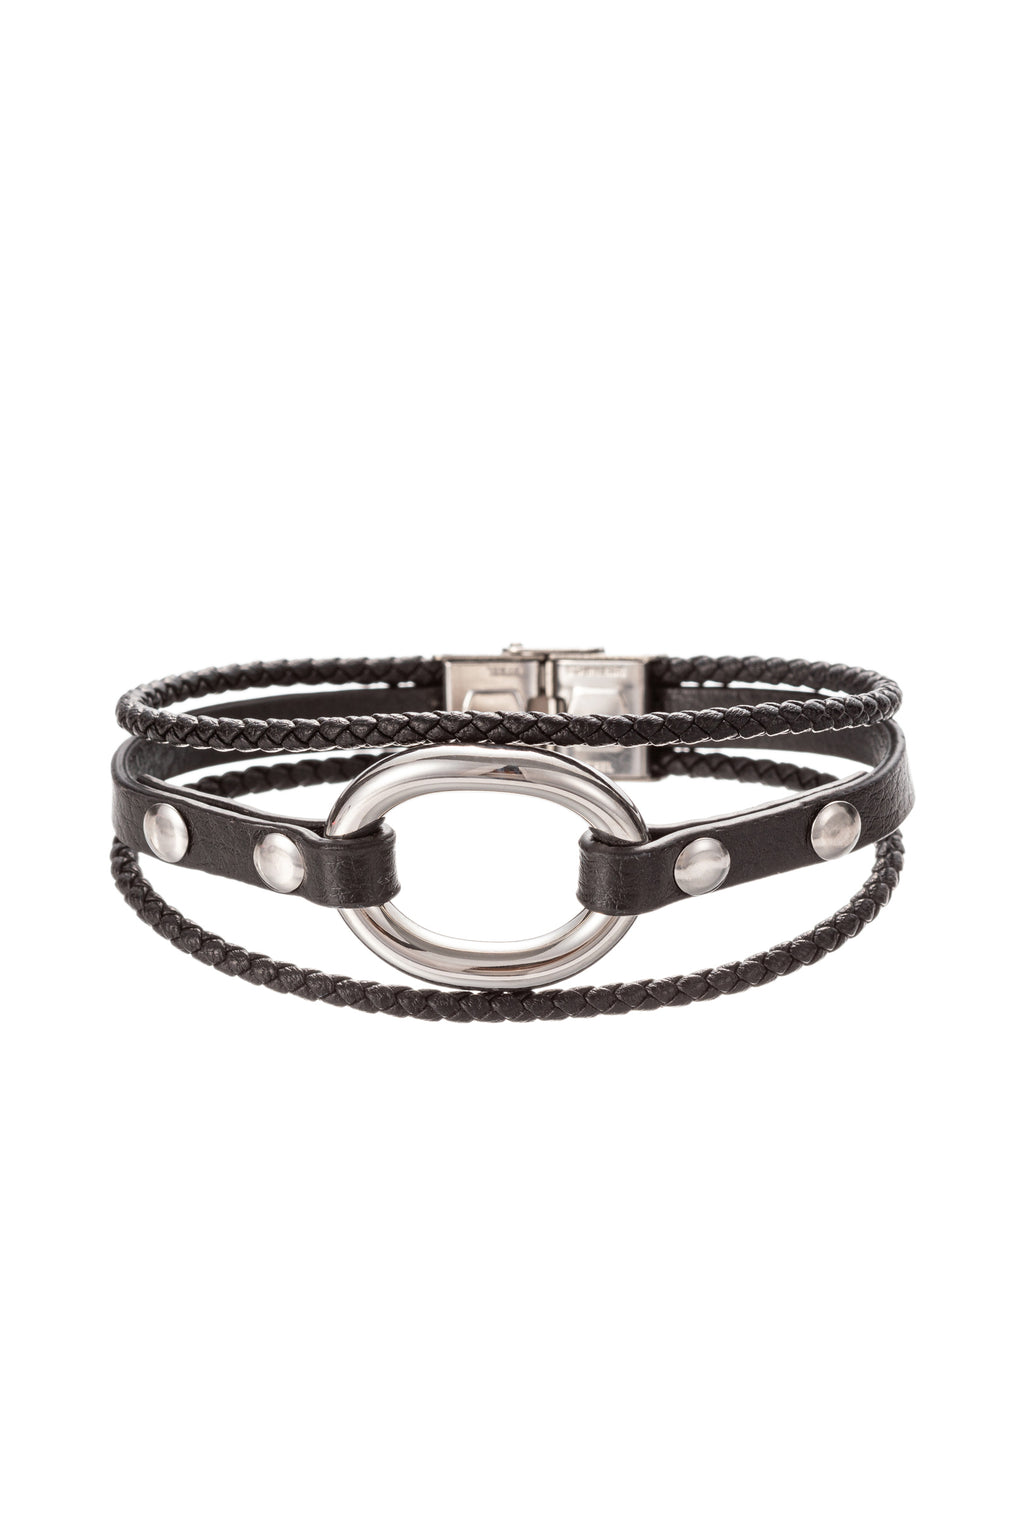 Silver titanium faux leather loop bracelet.